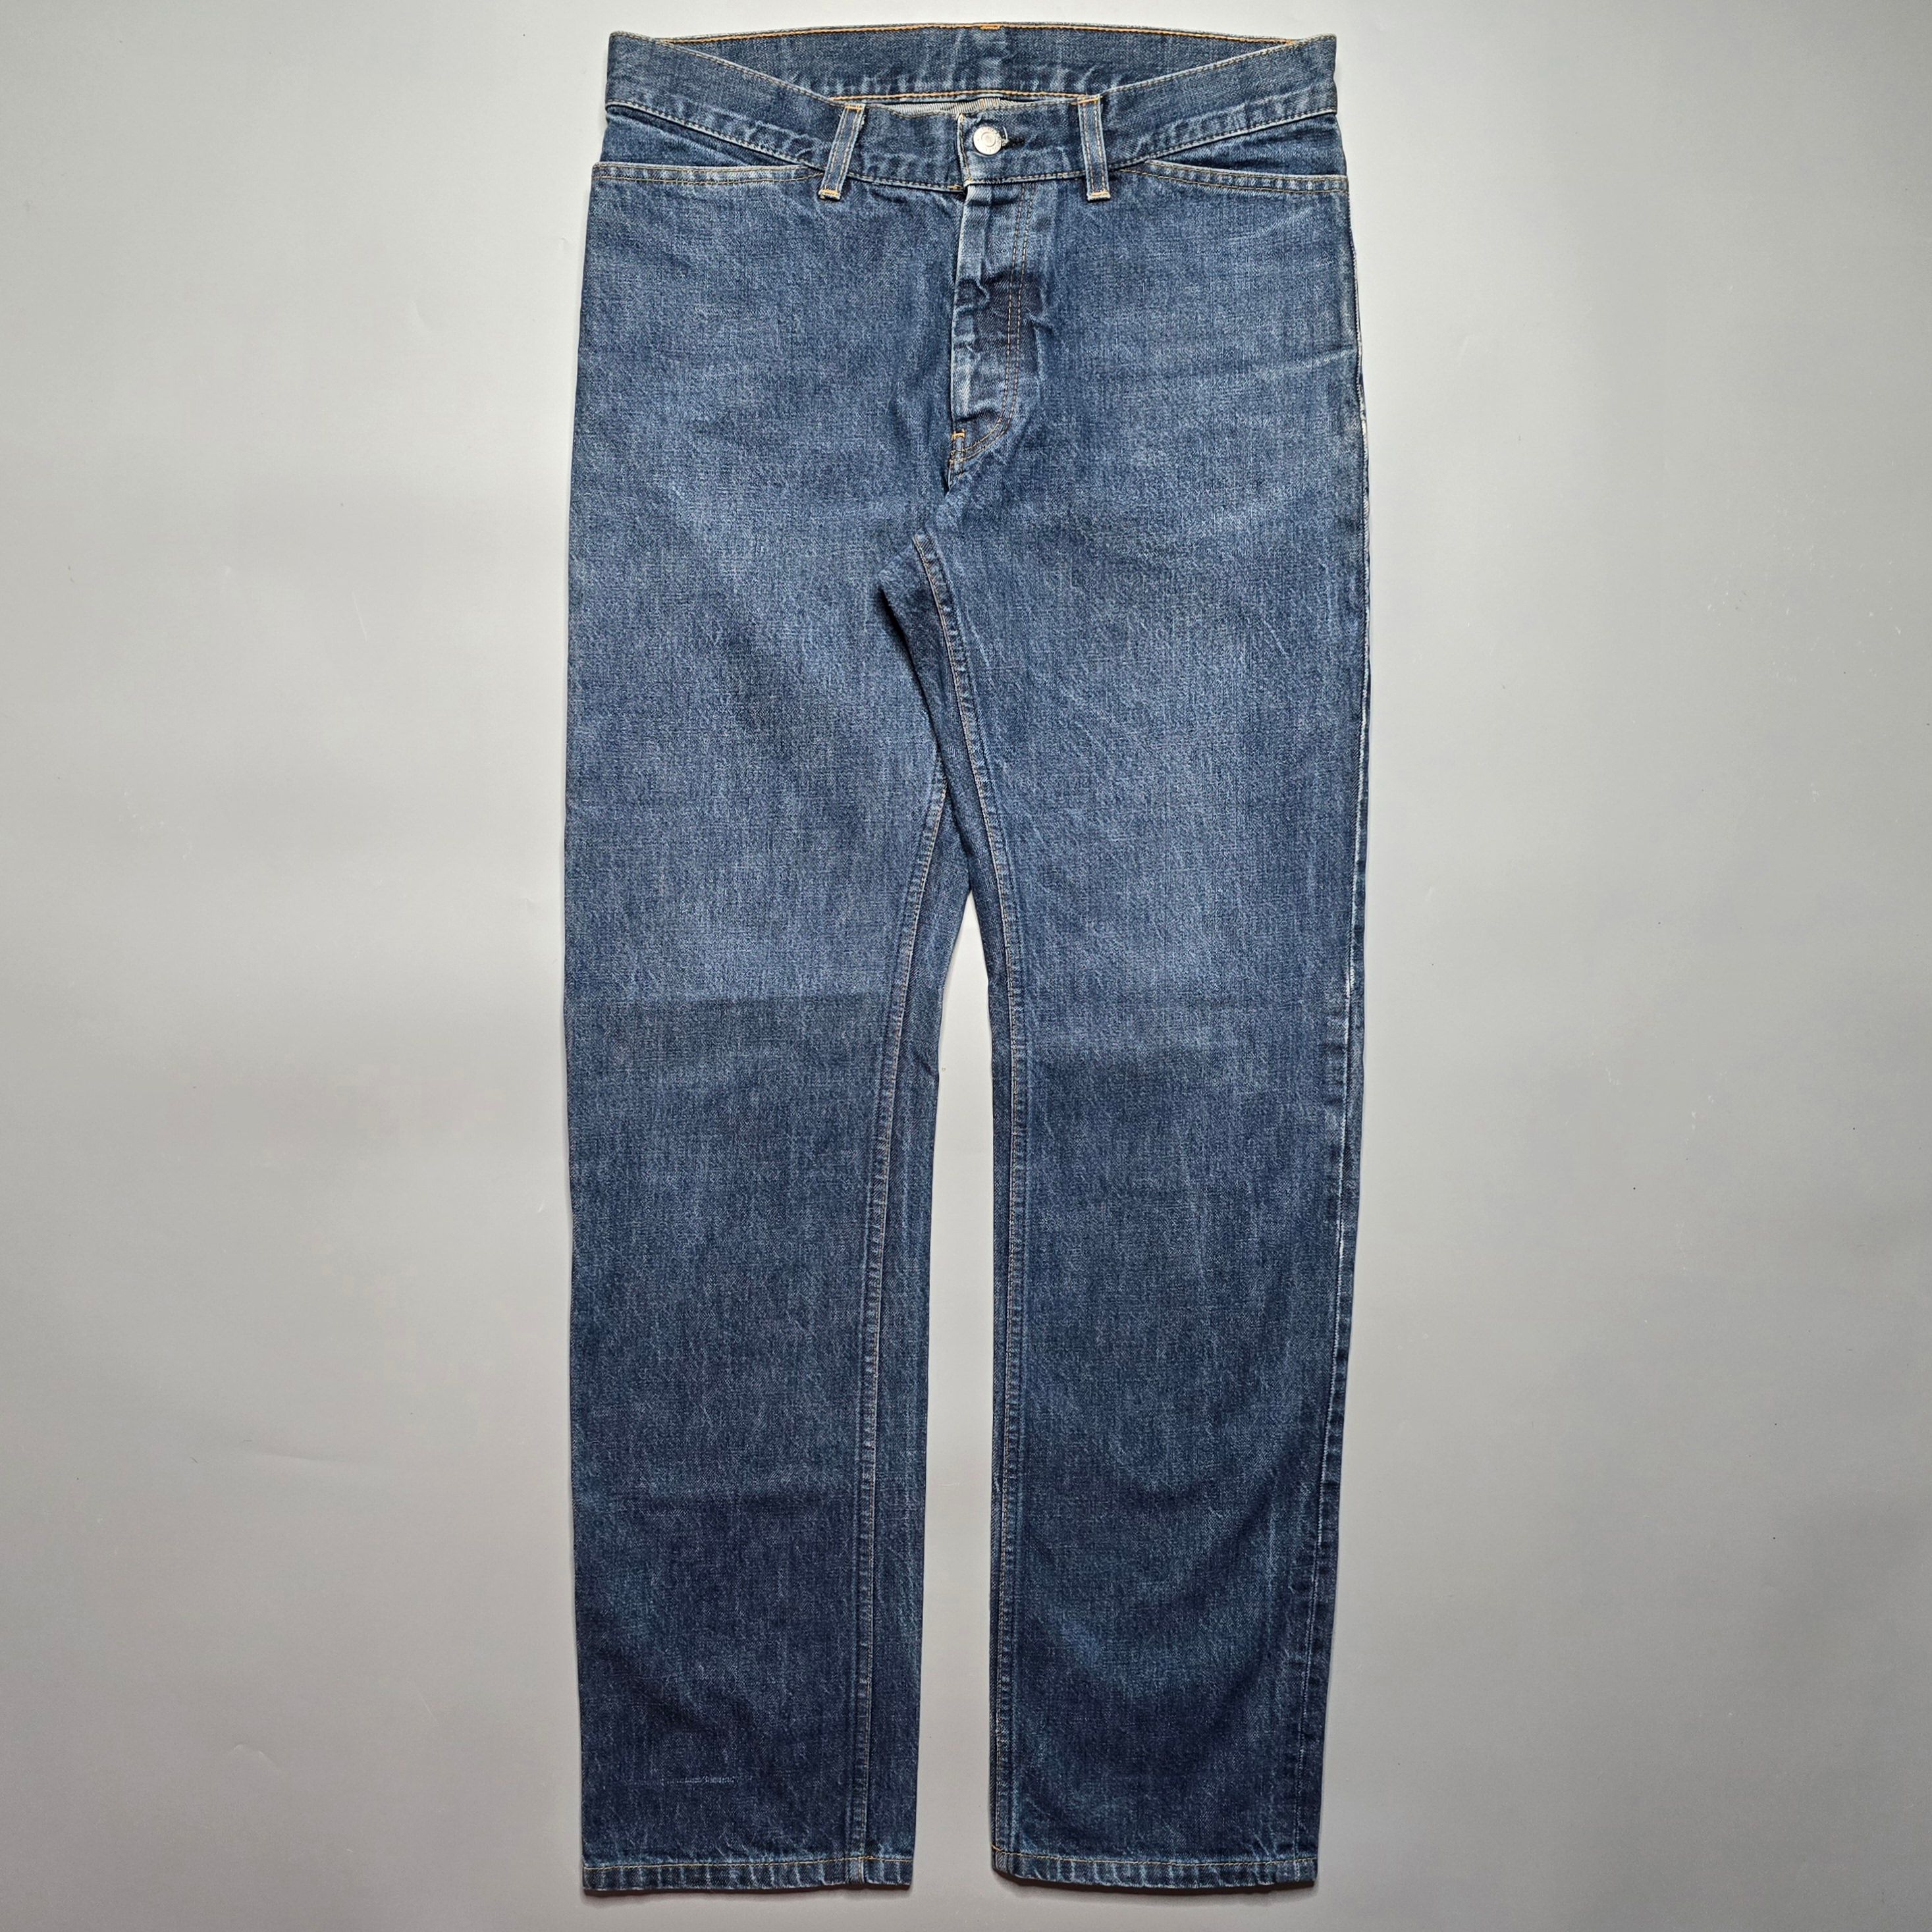 Helmut Lang - Archive Classic Cut Blue Jeans - 1